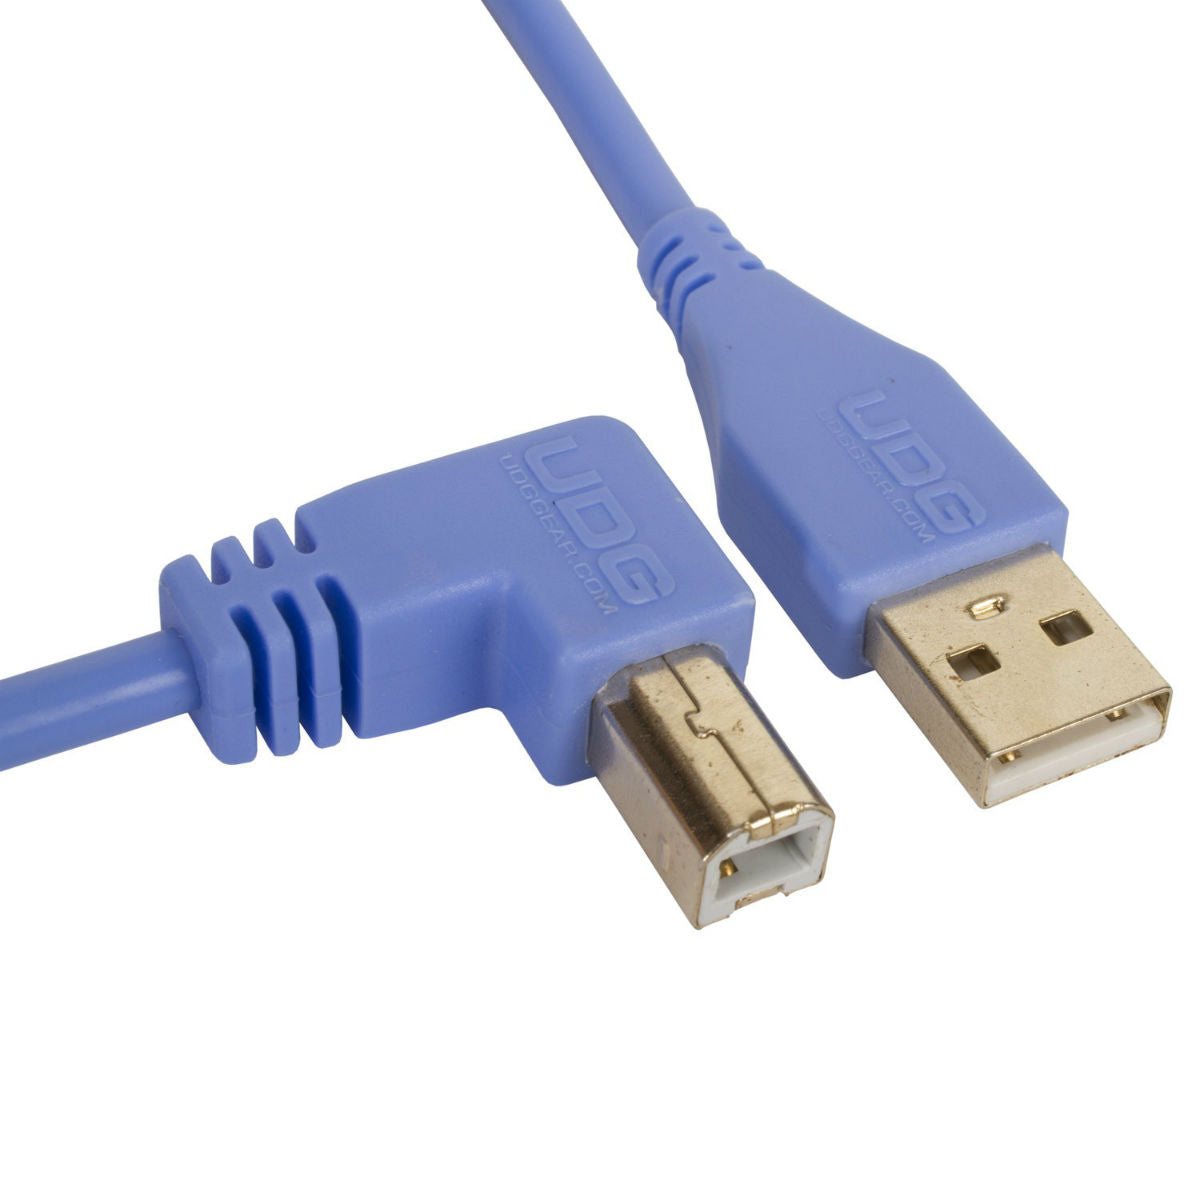 UDG USB Cable A-B 2m Blue Angled U95005LB